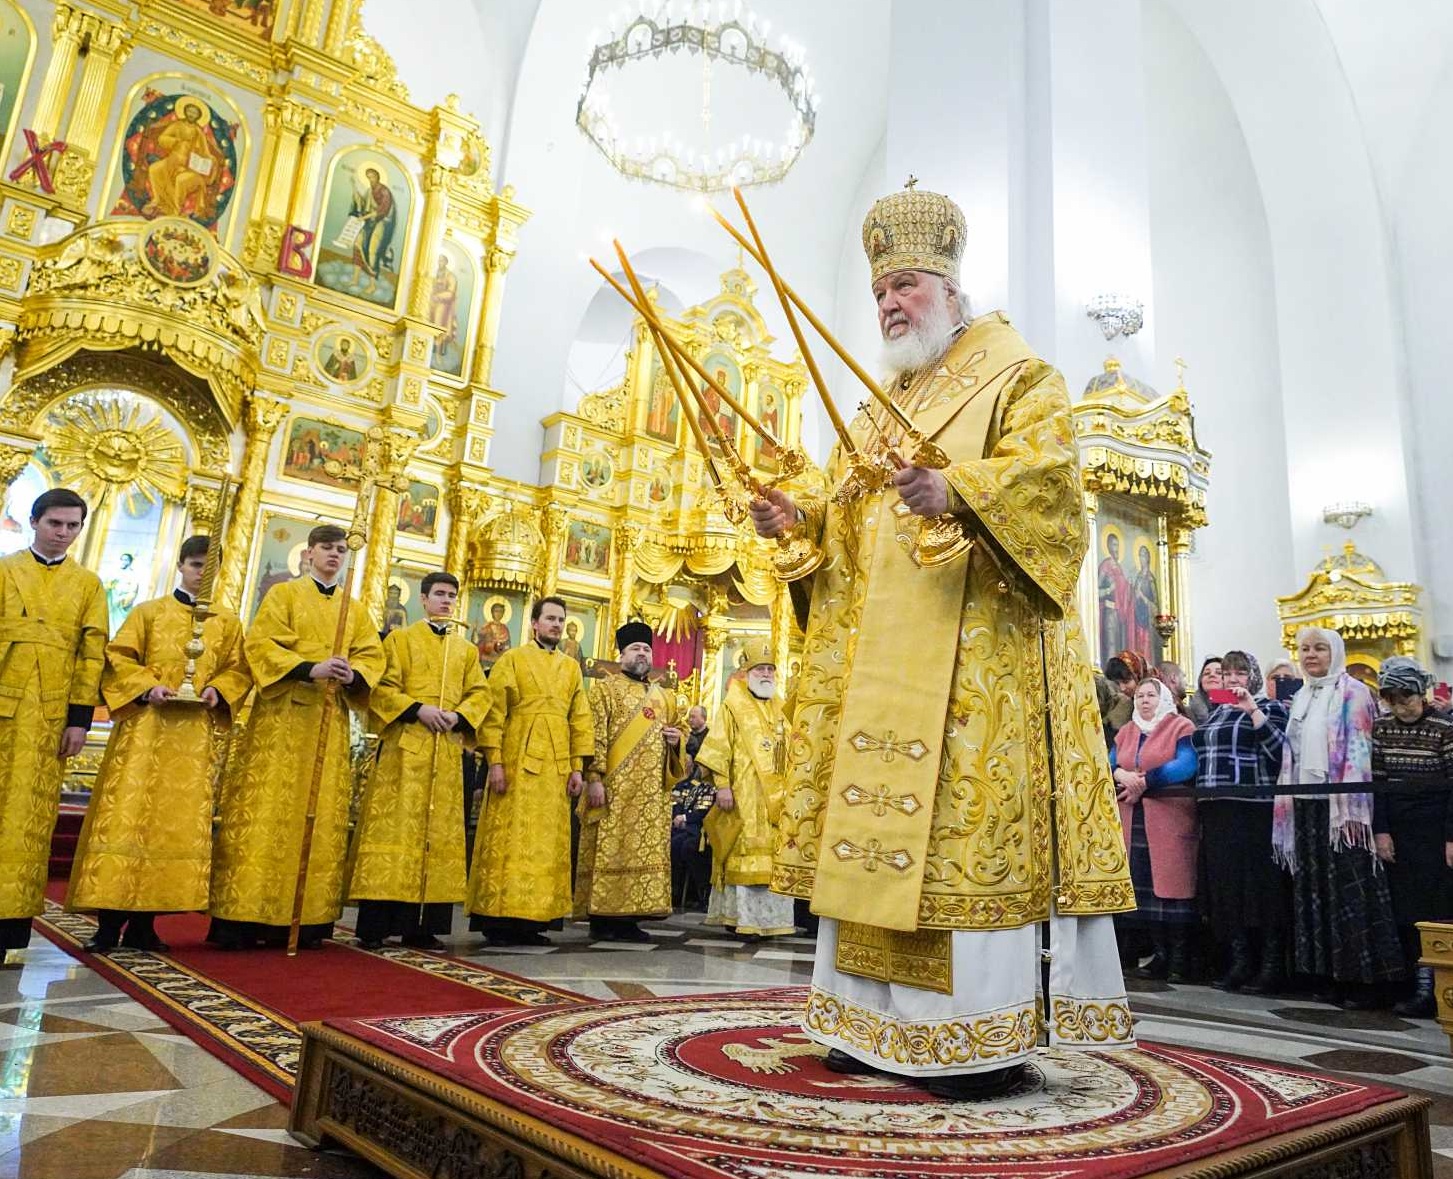 Есть угроза полномасштабной войны, считает Патриарх Кирилл